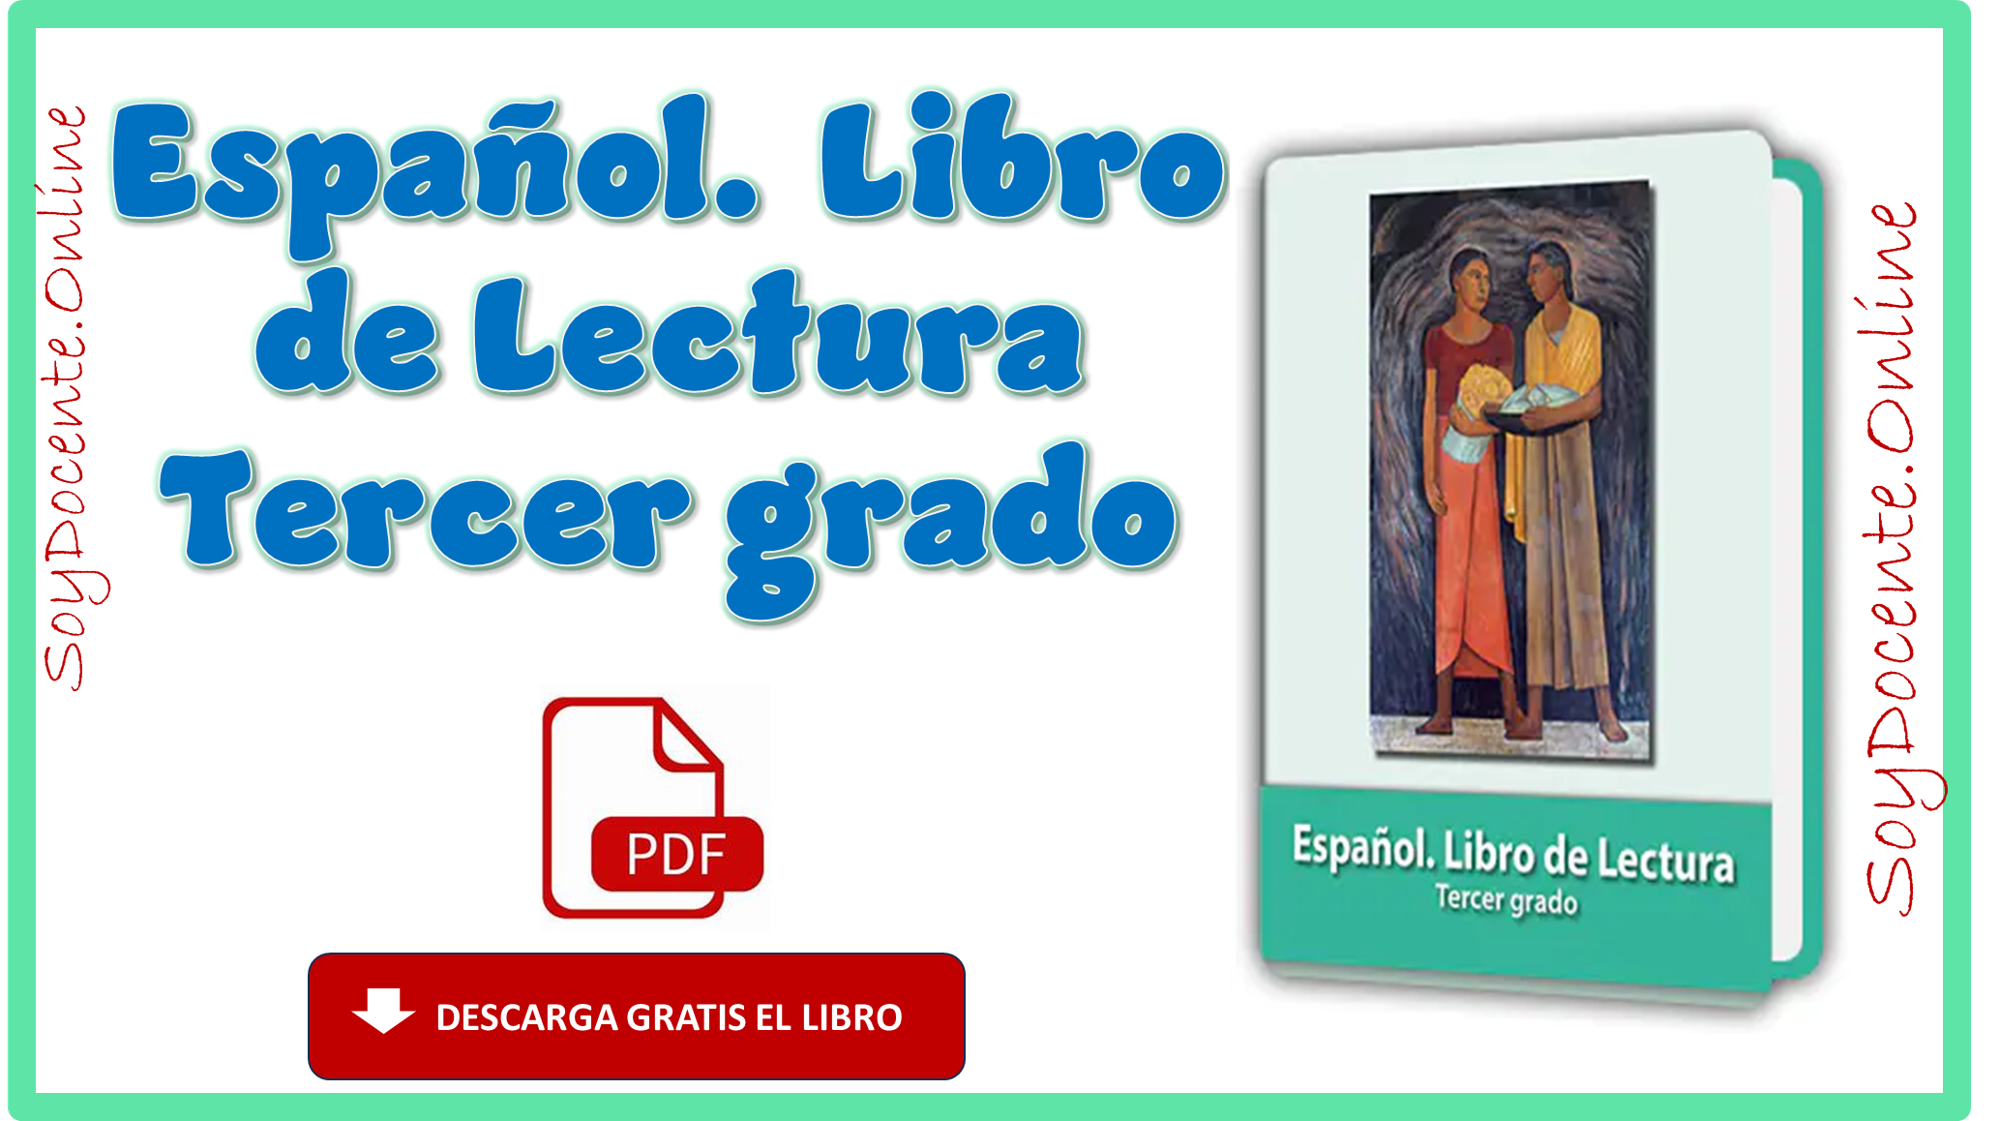 Descarga gratis el Libro Español Lecturas tercer grado de Primaria en PDF, obra de la SEP, contribuido por la CONALITEG